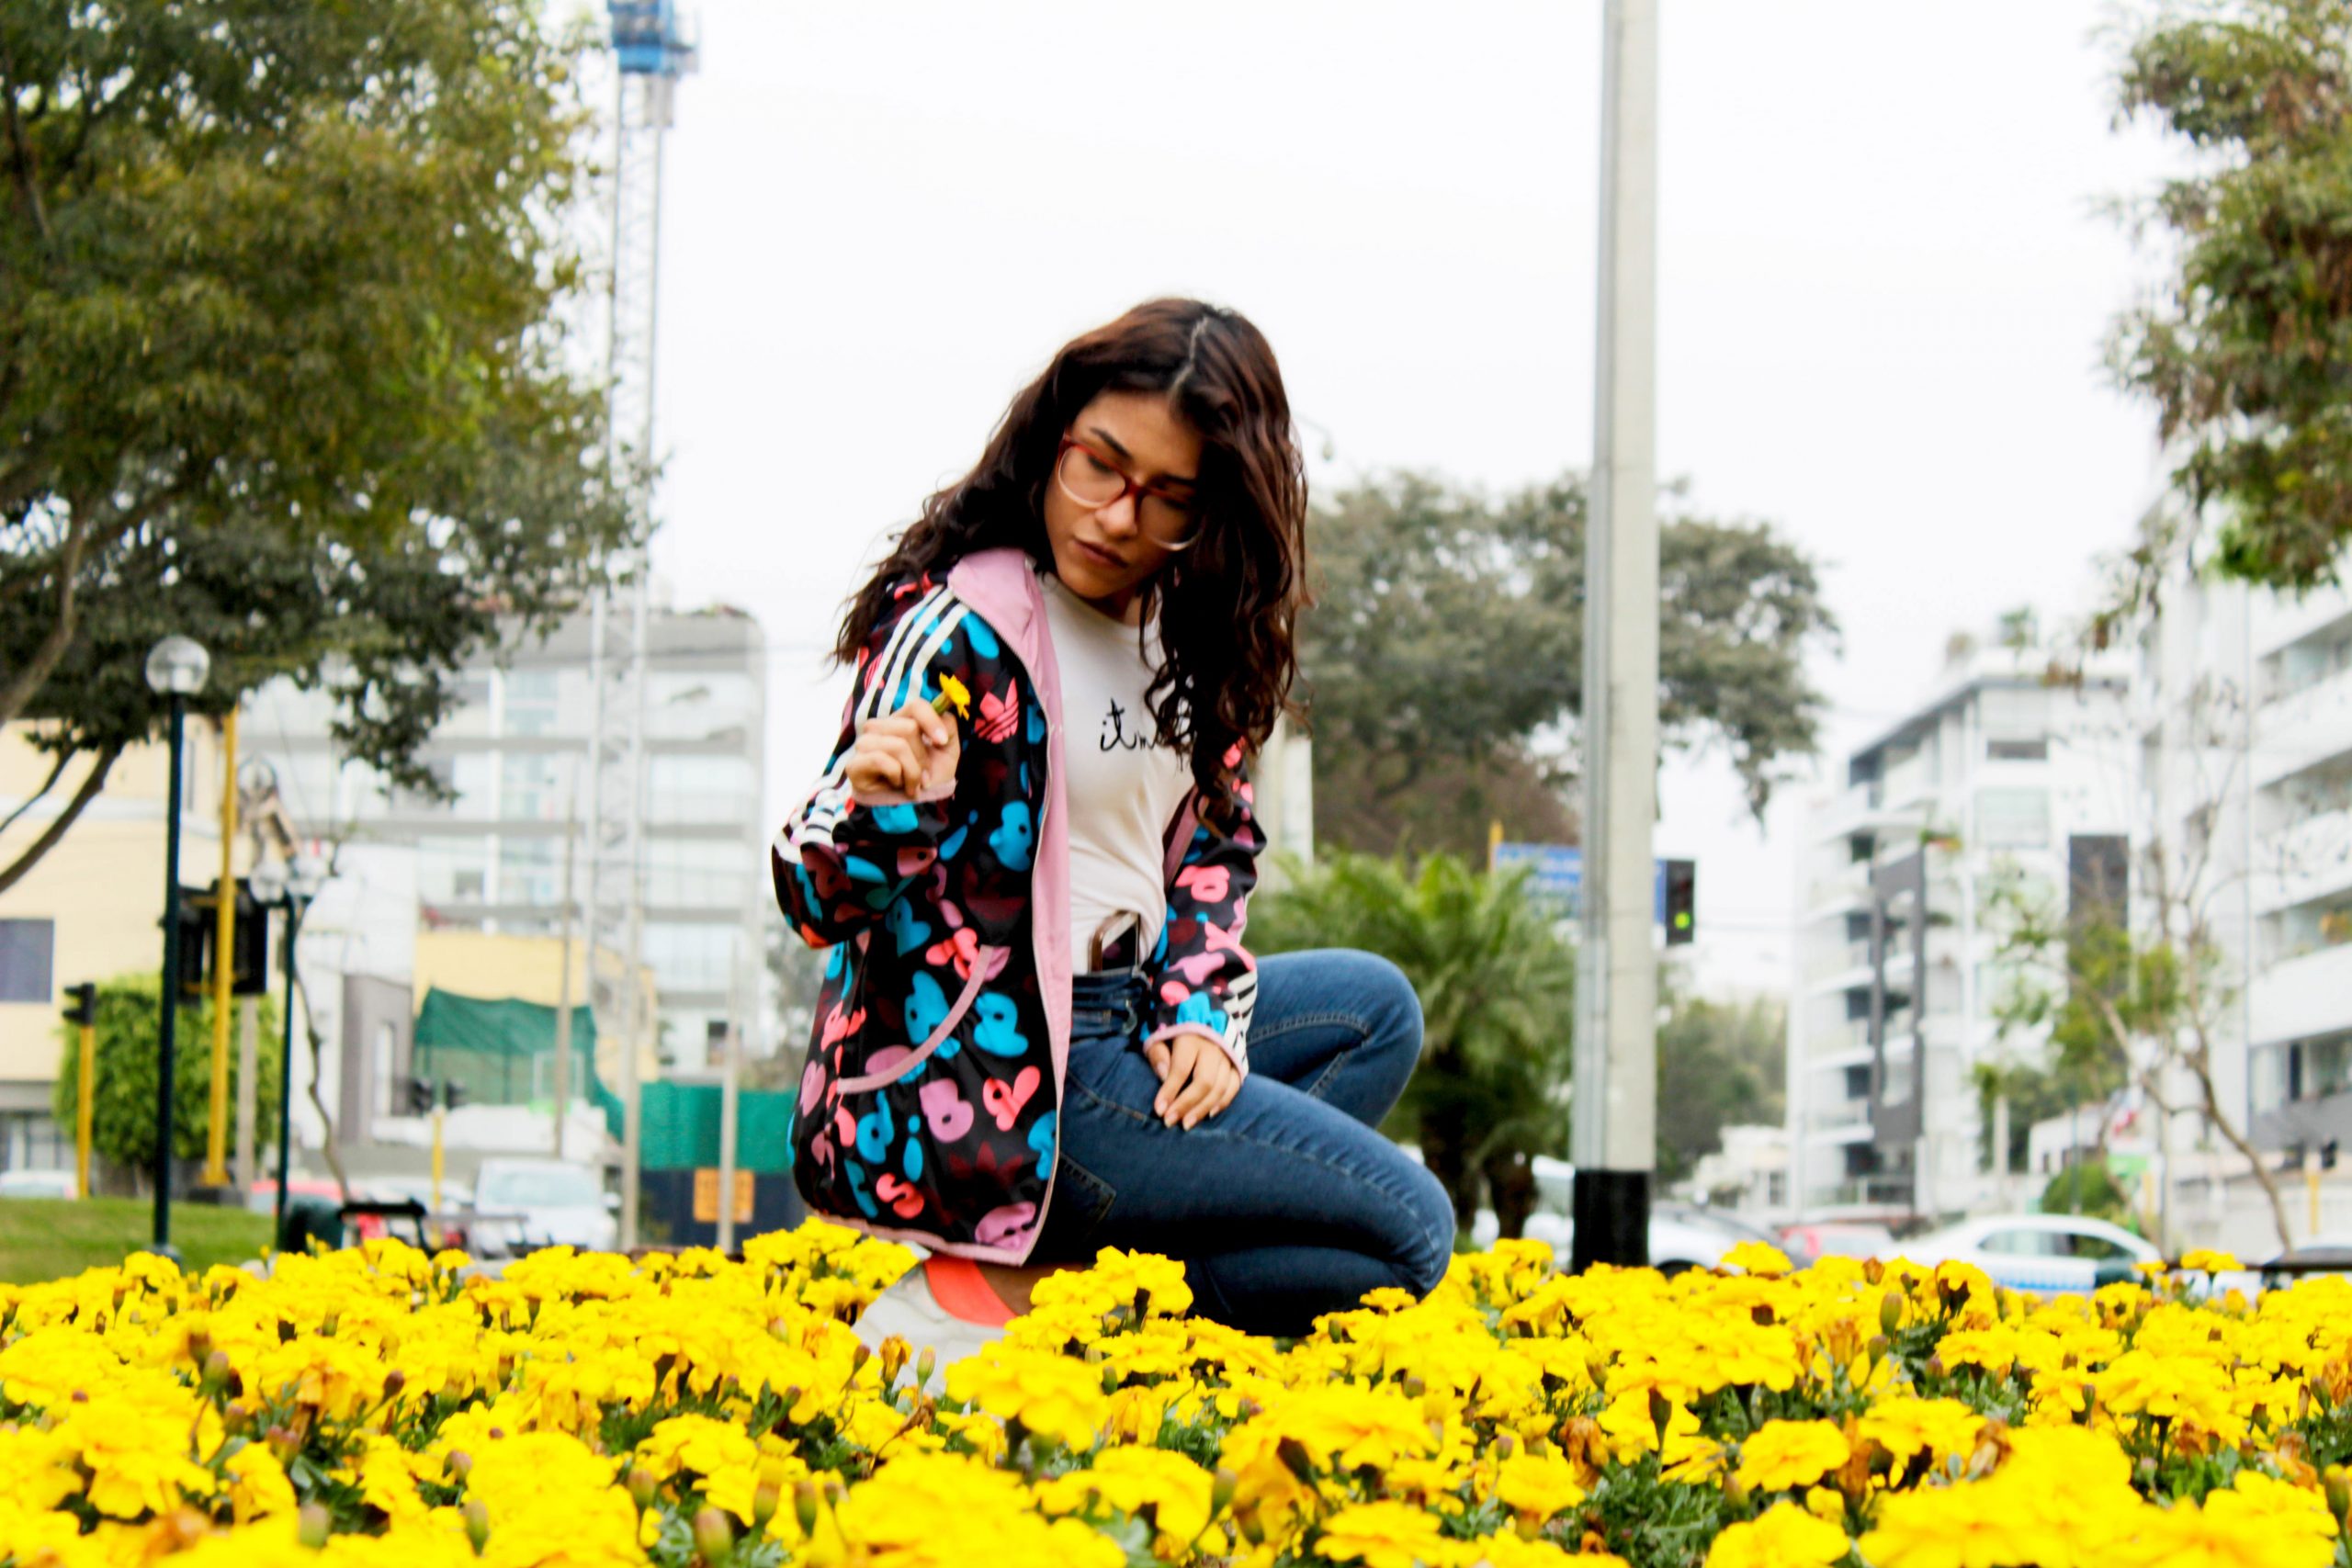 Yellow wallpaper, flowers, girly, tumblr, citygirl, plant, flowering plant